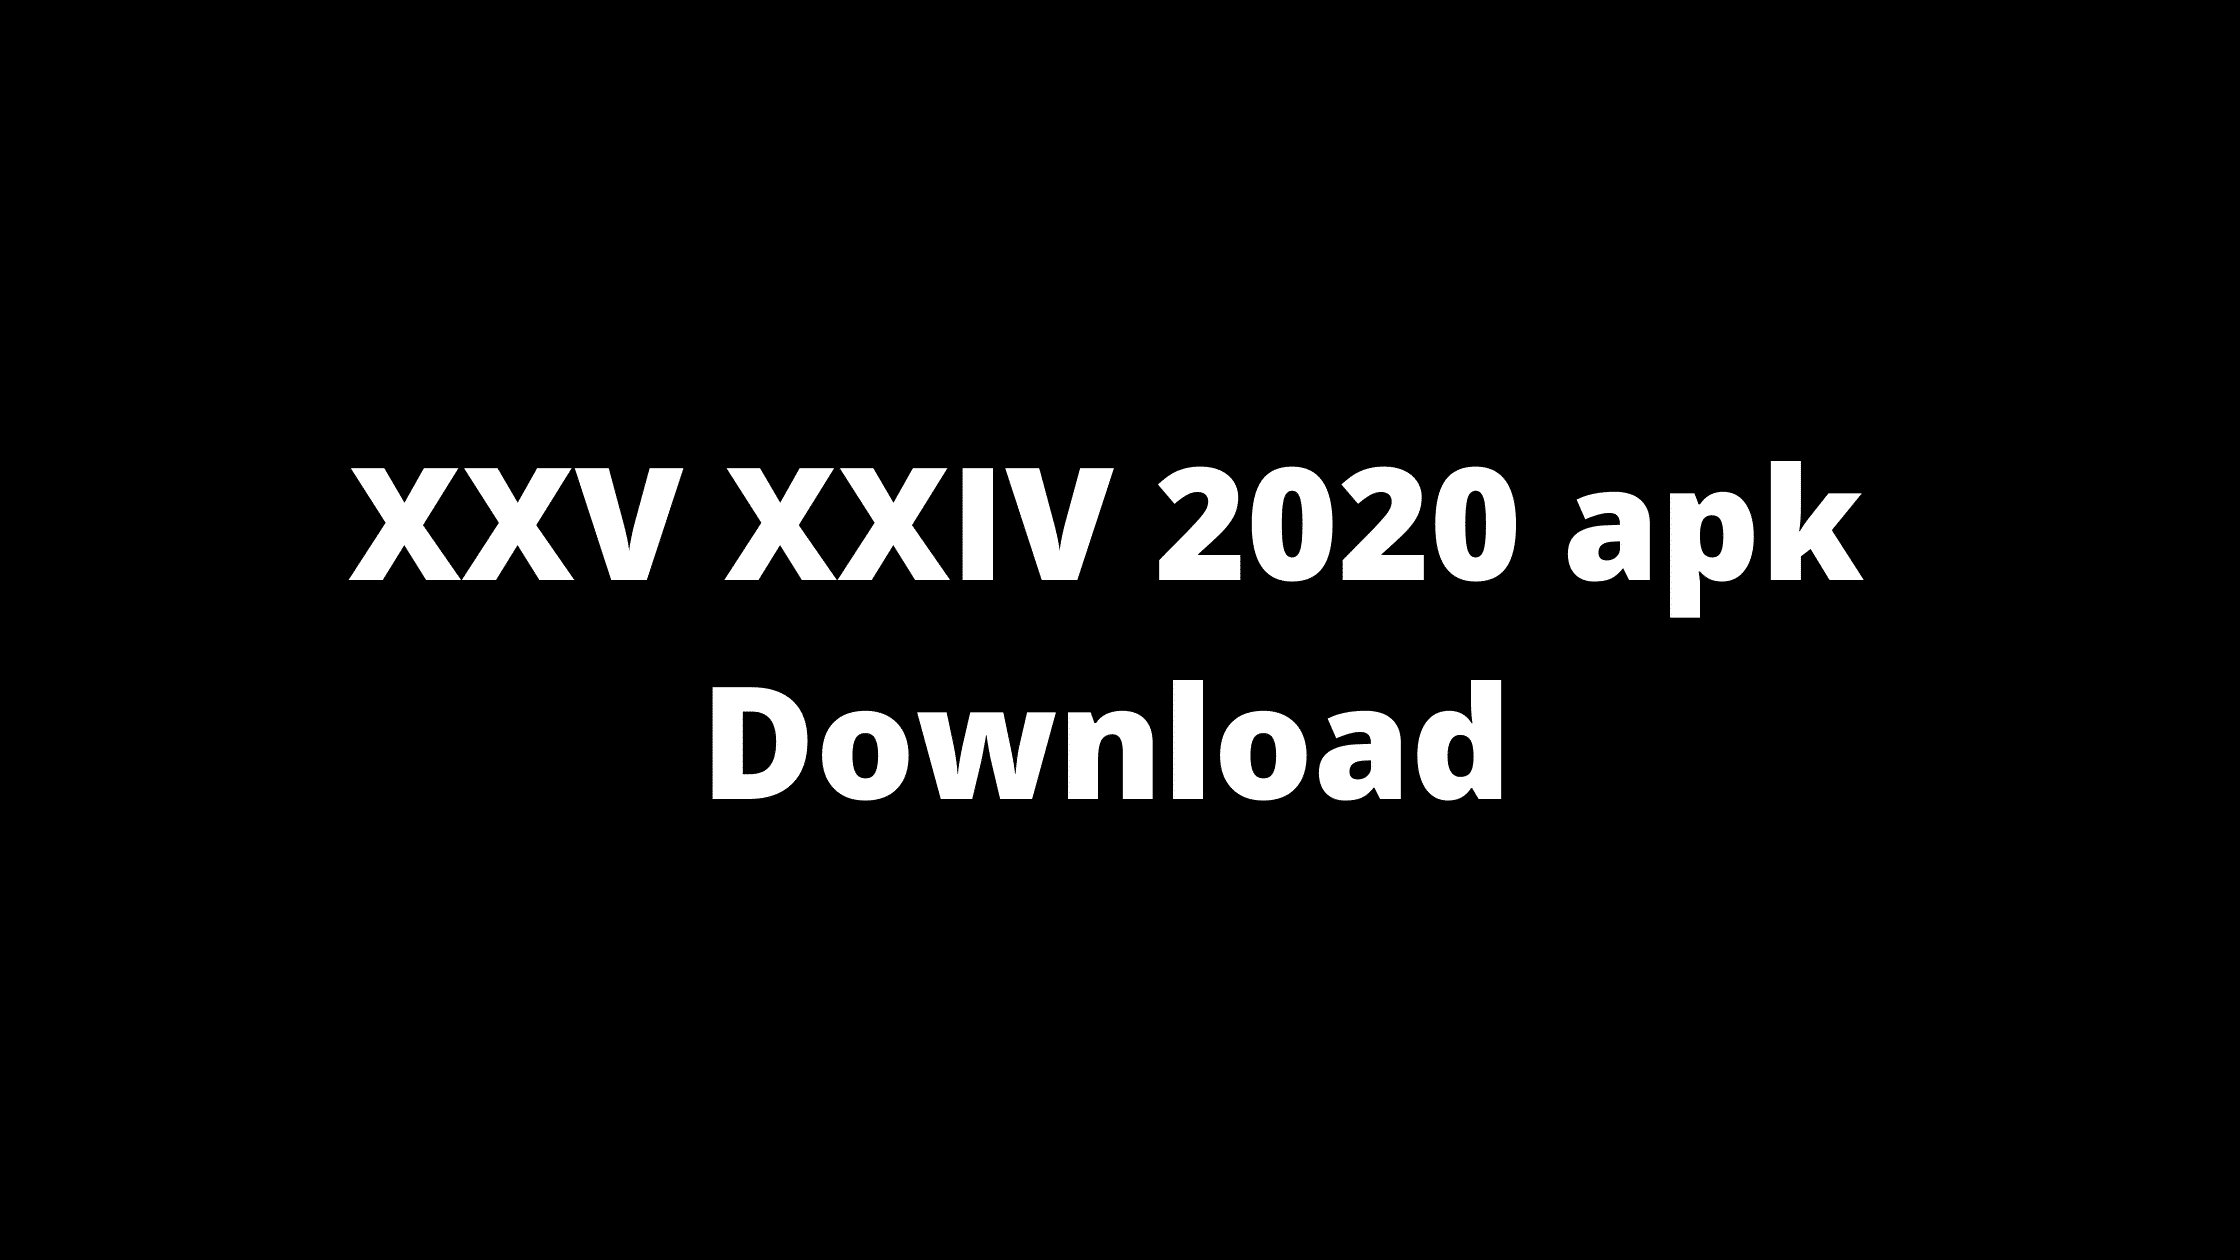 Xxv Xxiv 2020 Ethiopia 2017 - Know How This Application Works!